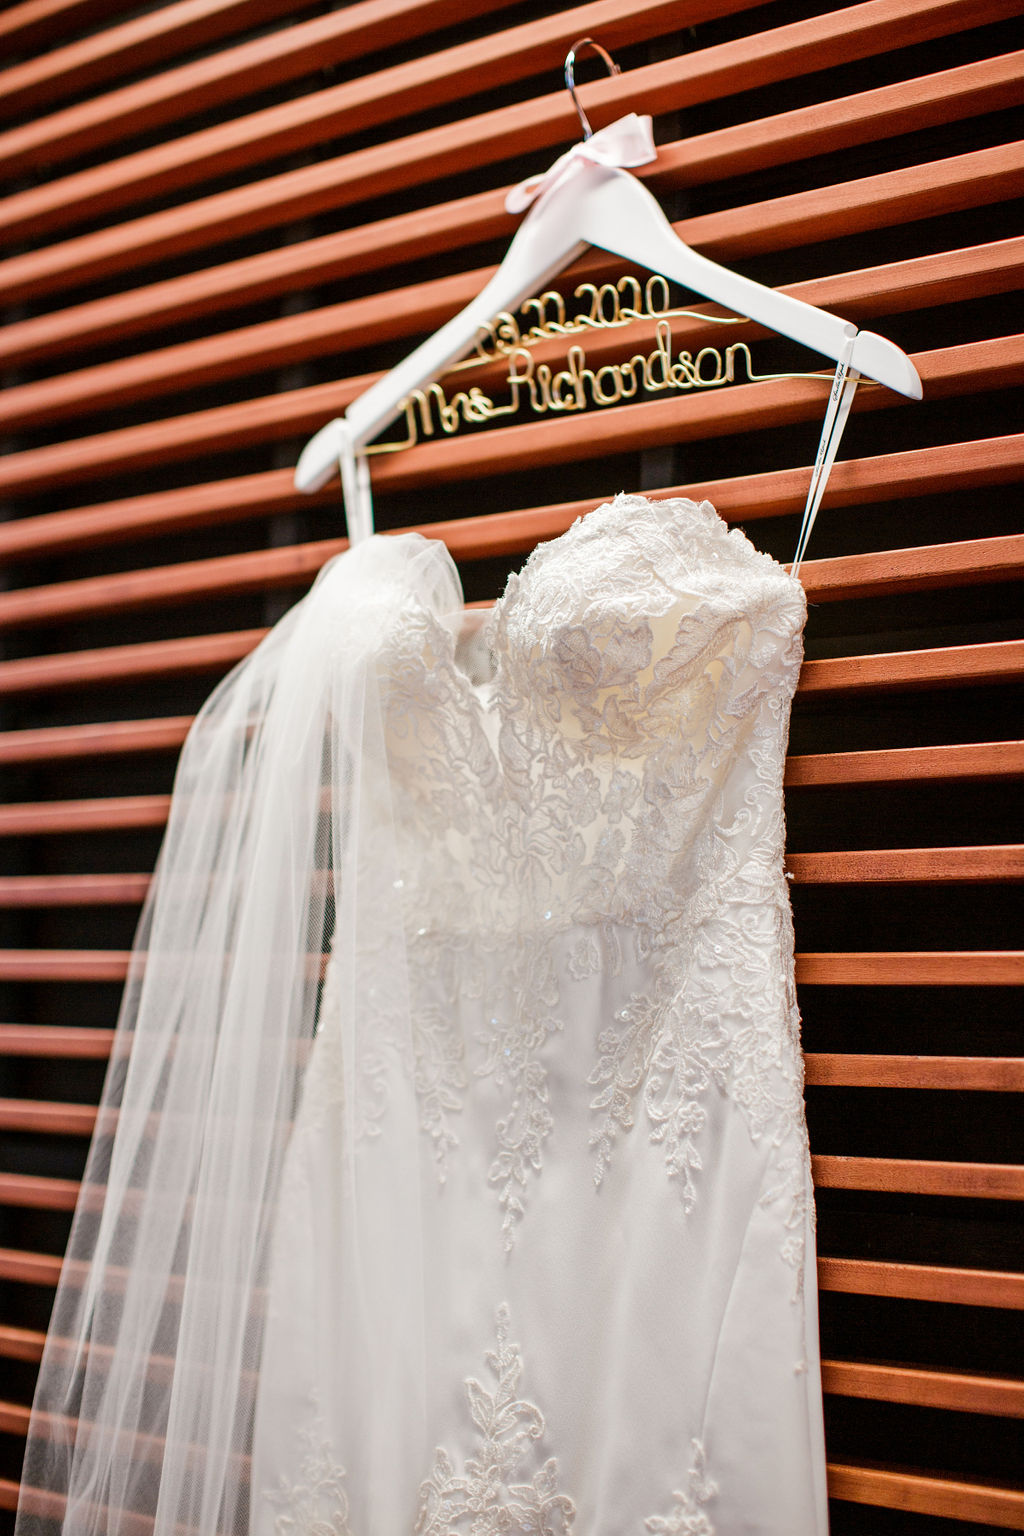 Strapless embroidered wedding dress design | Nashville Bride Guide